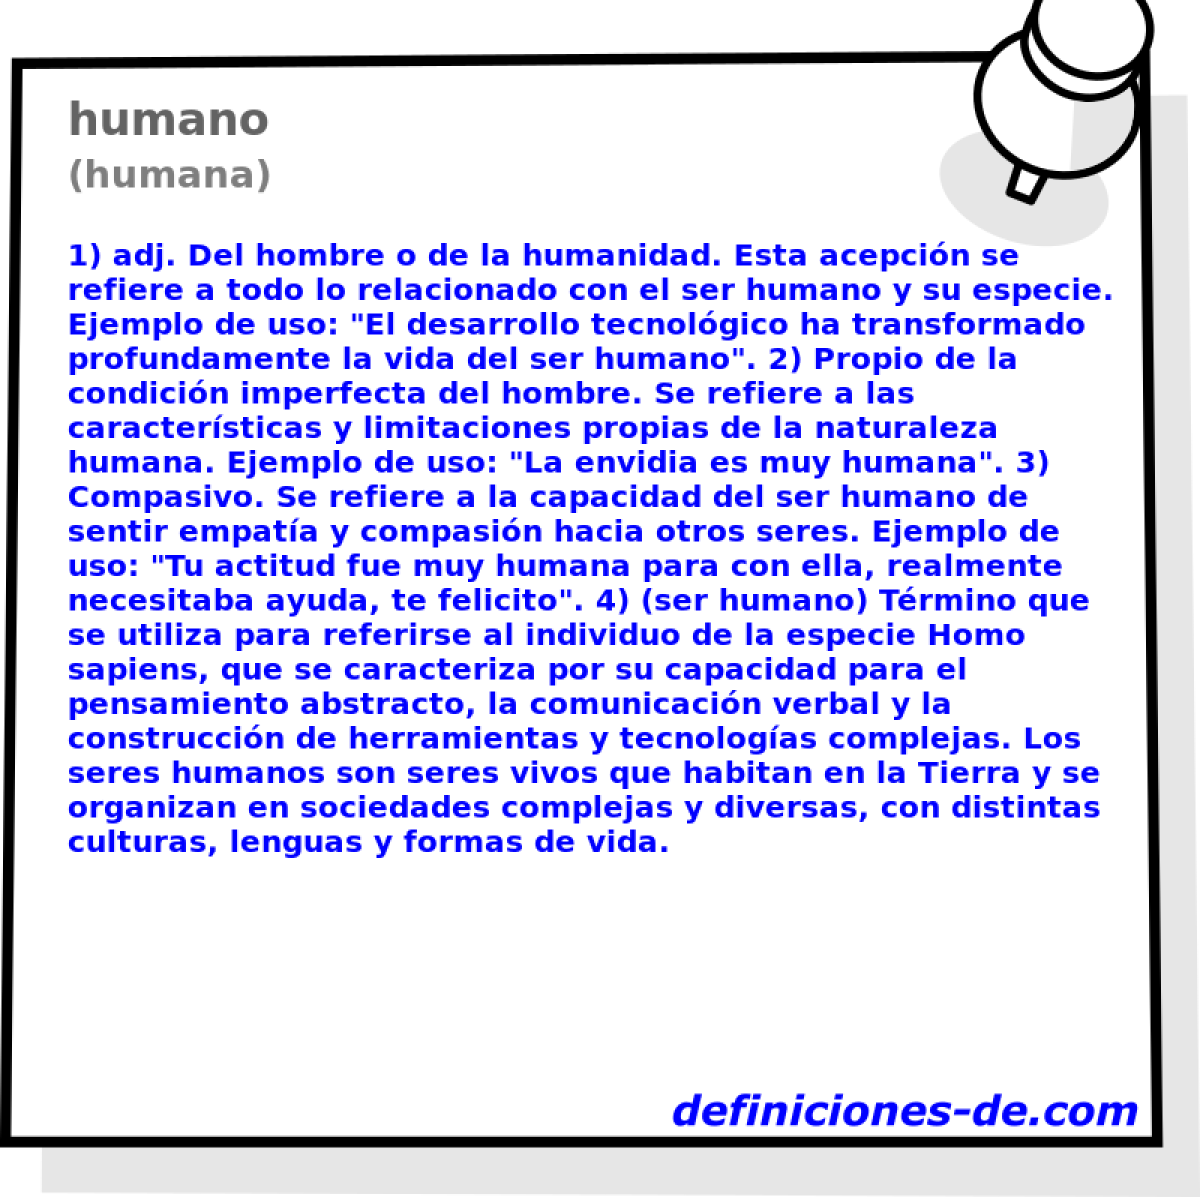 humano (humana)